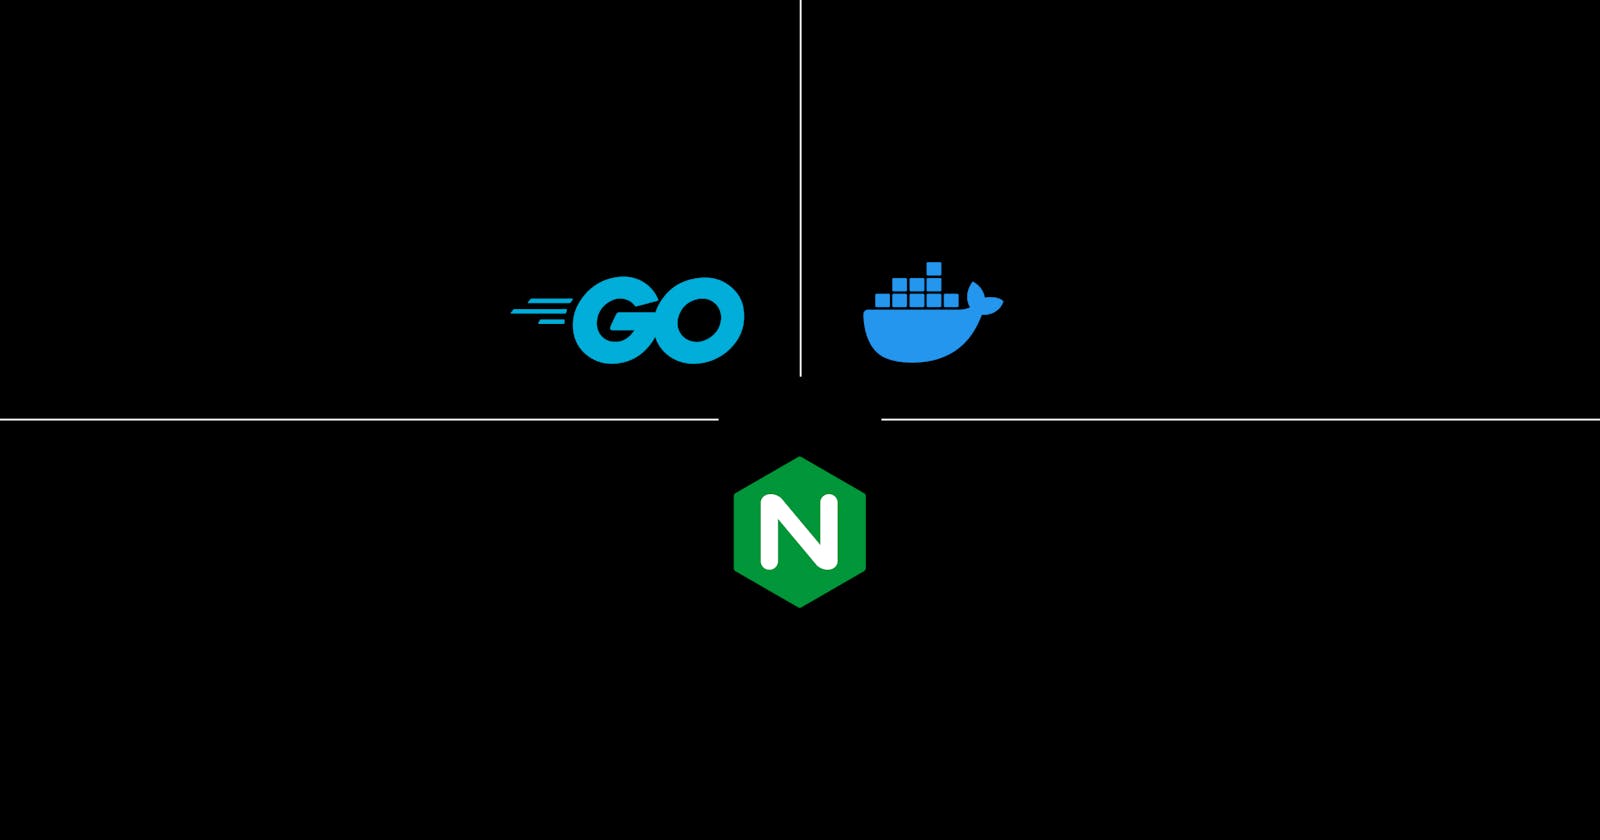 Load Balancing with Nginx and Docker